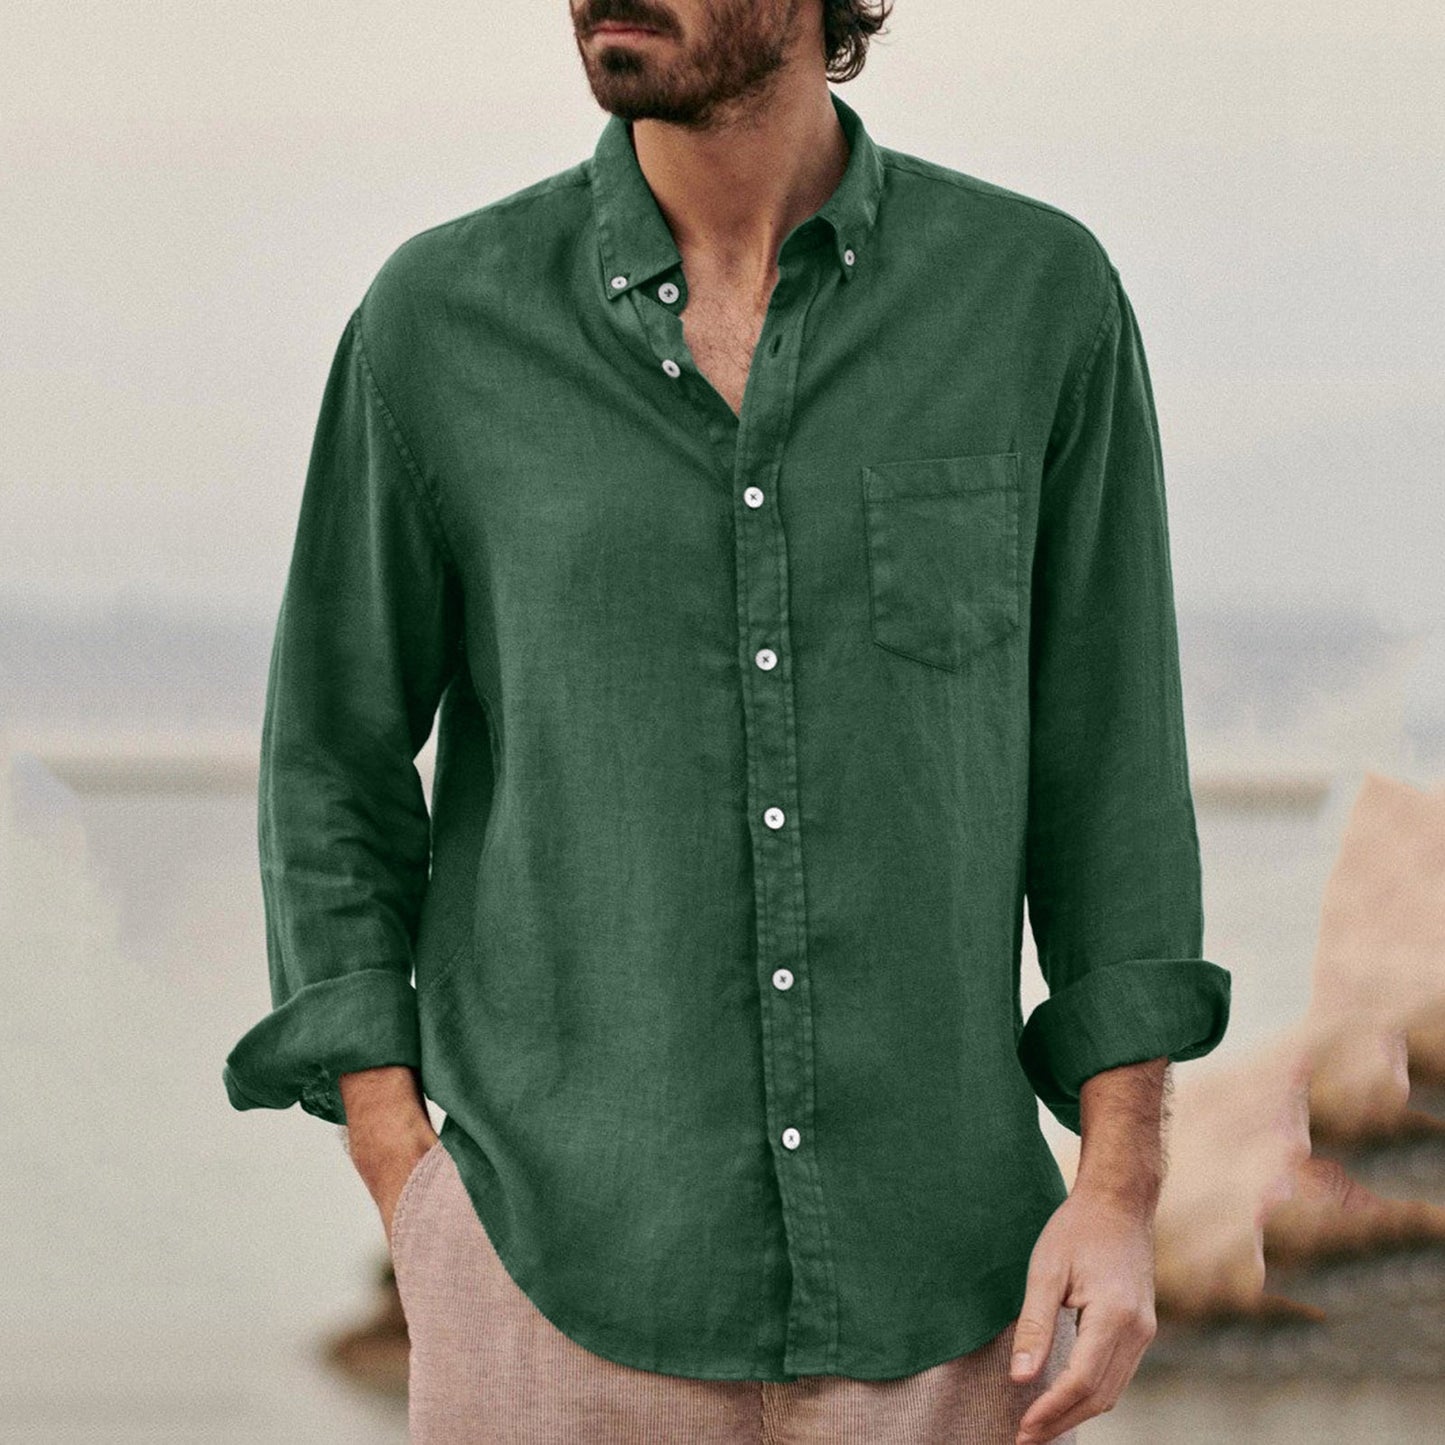 Solid Color Casual Lapel Cardigan Men's Shirt